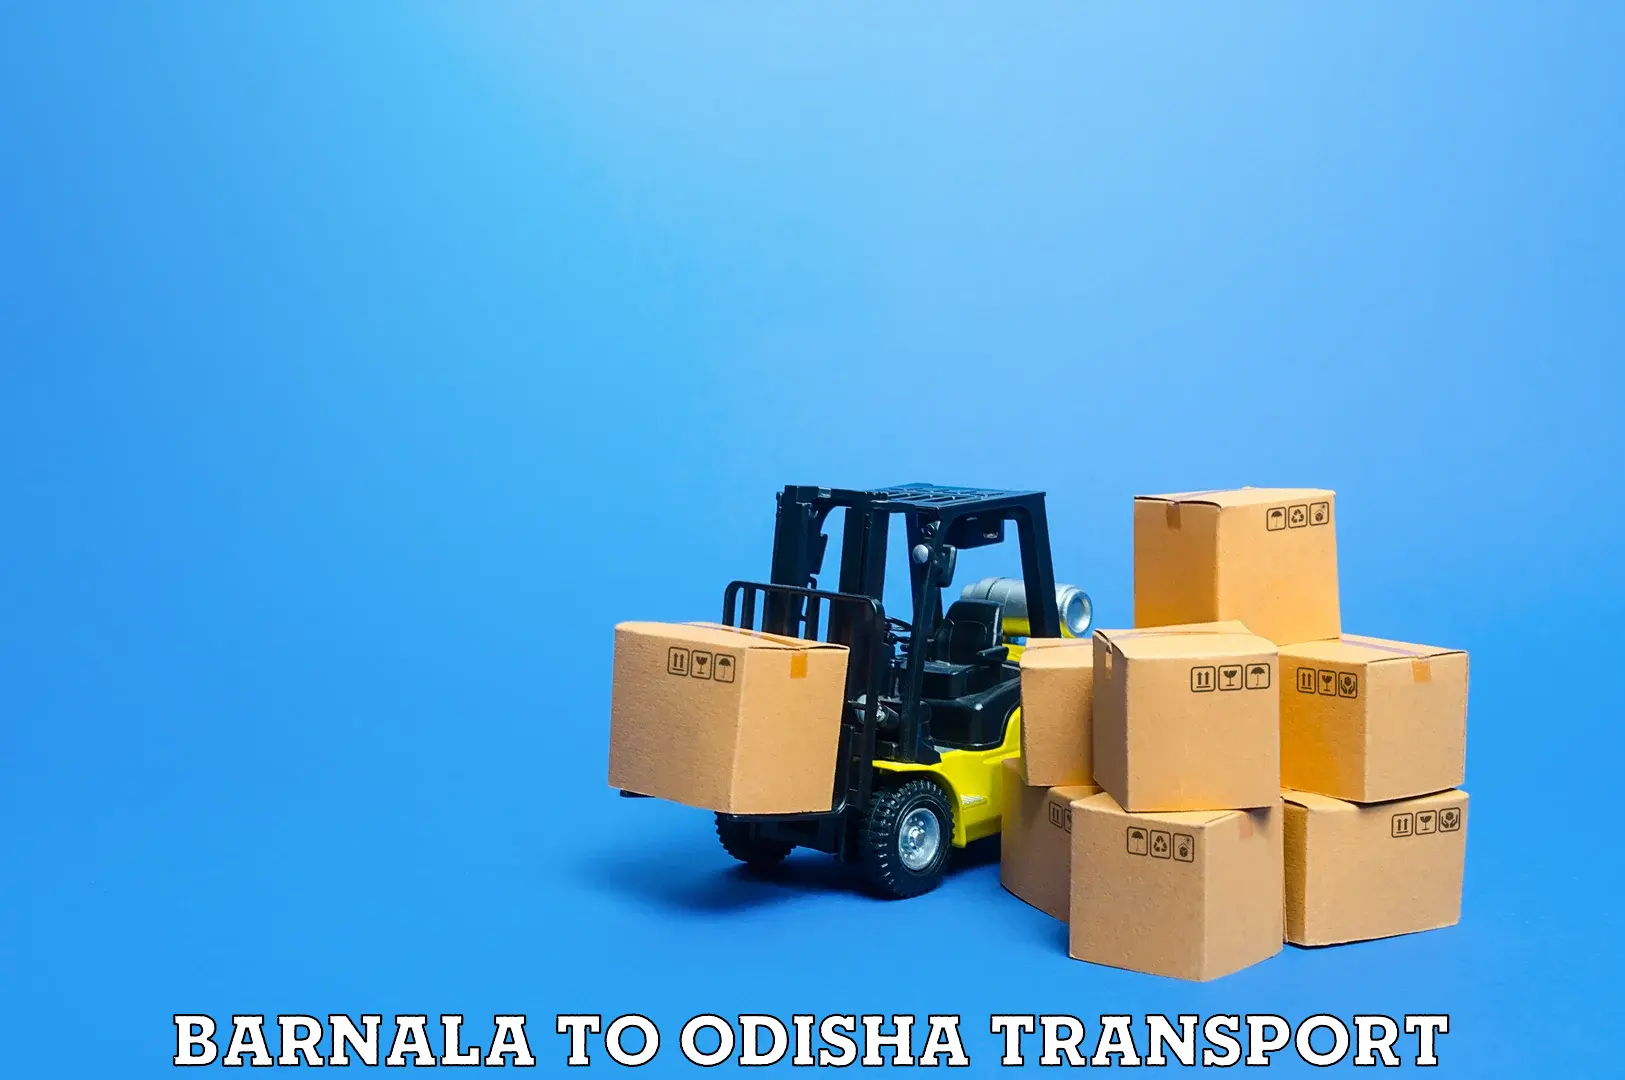 Bike shipping service Barnala to Odisha